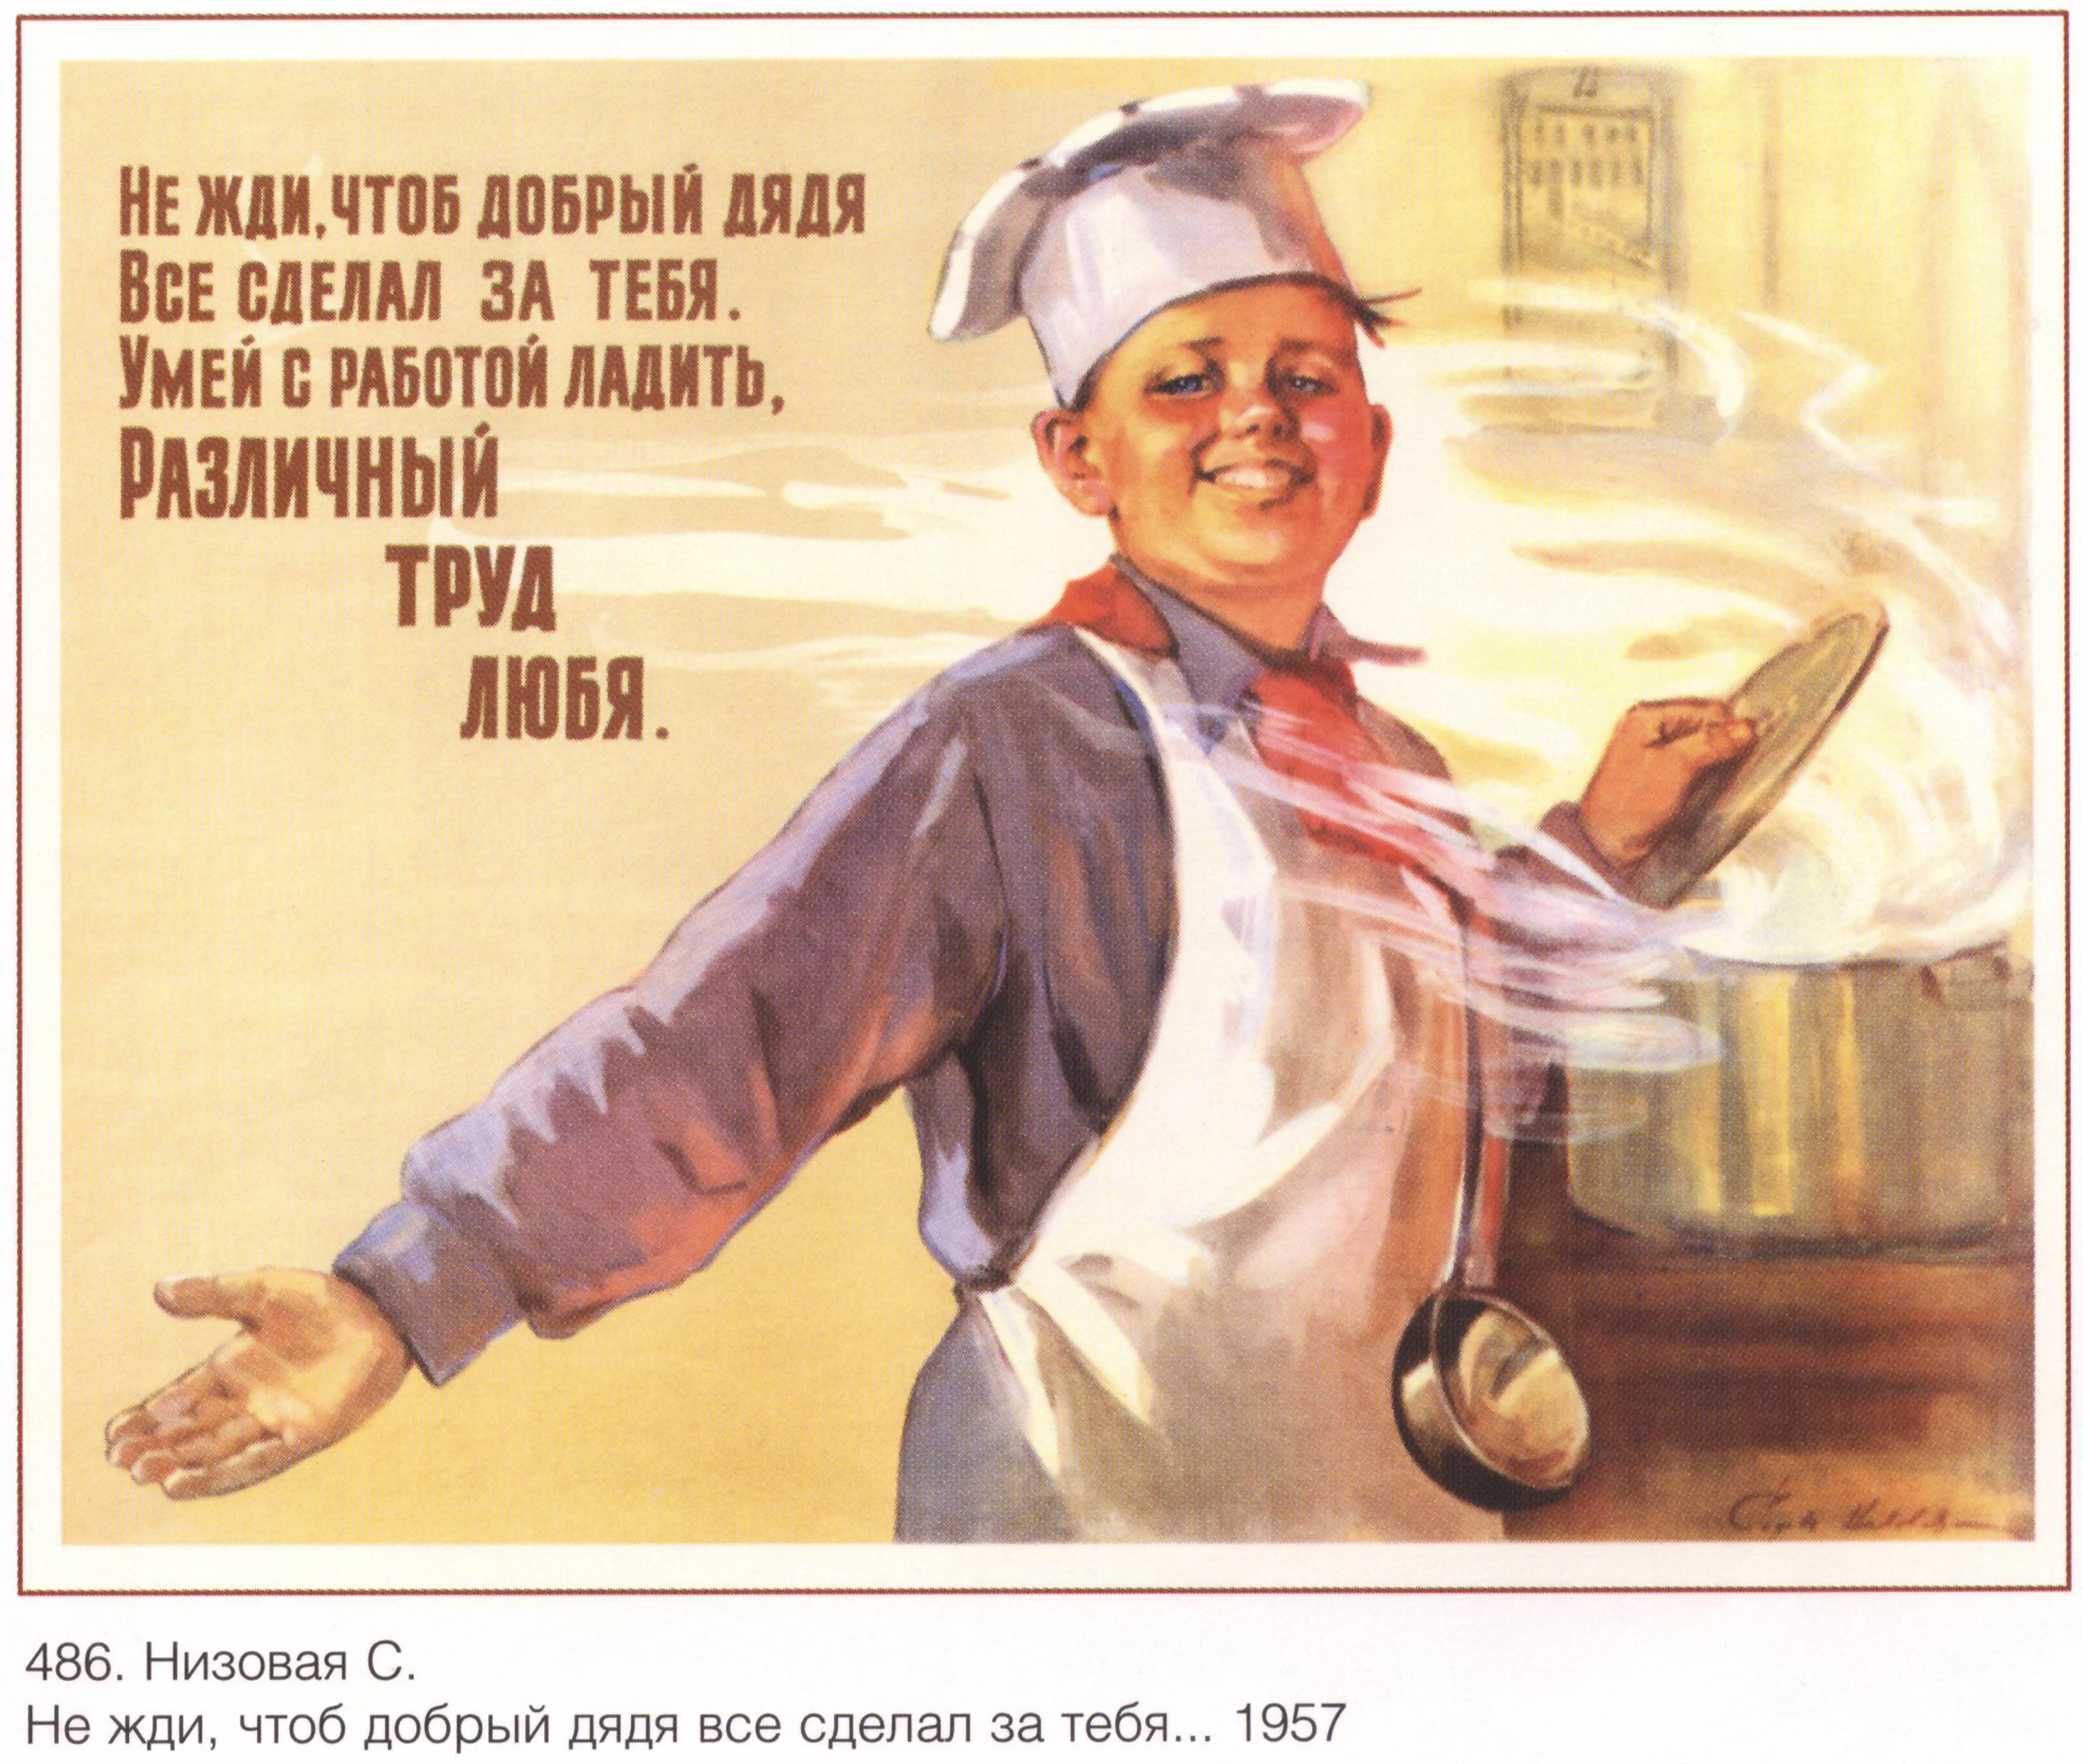 Плакат скорее бы на работу. Советские плакаты. Советские плакаты про труд. Советские платки. Плакаты с лозунгами.